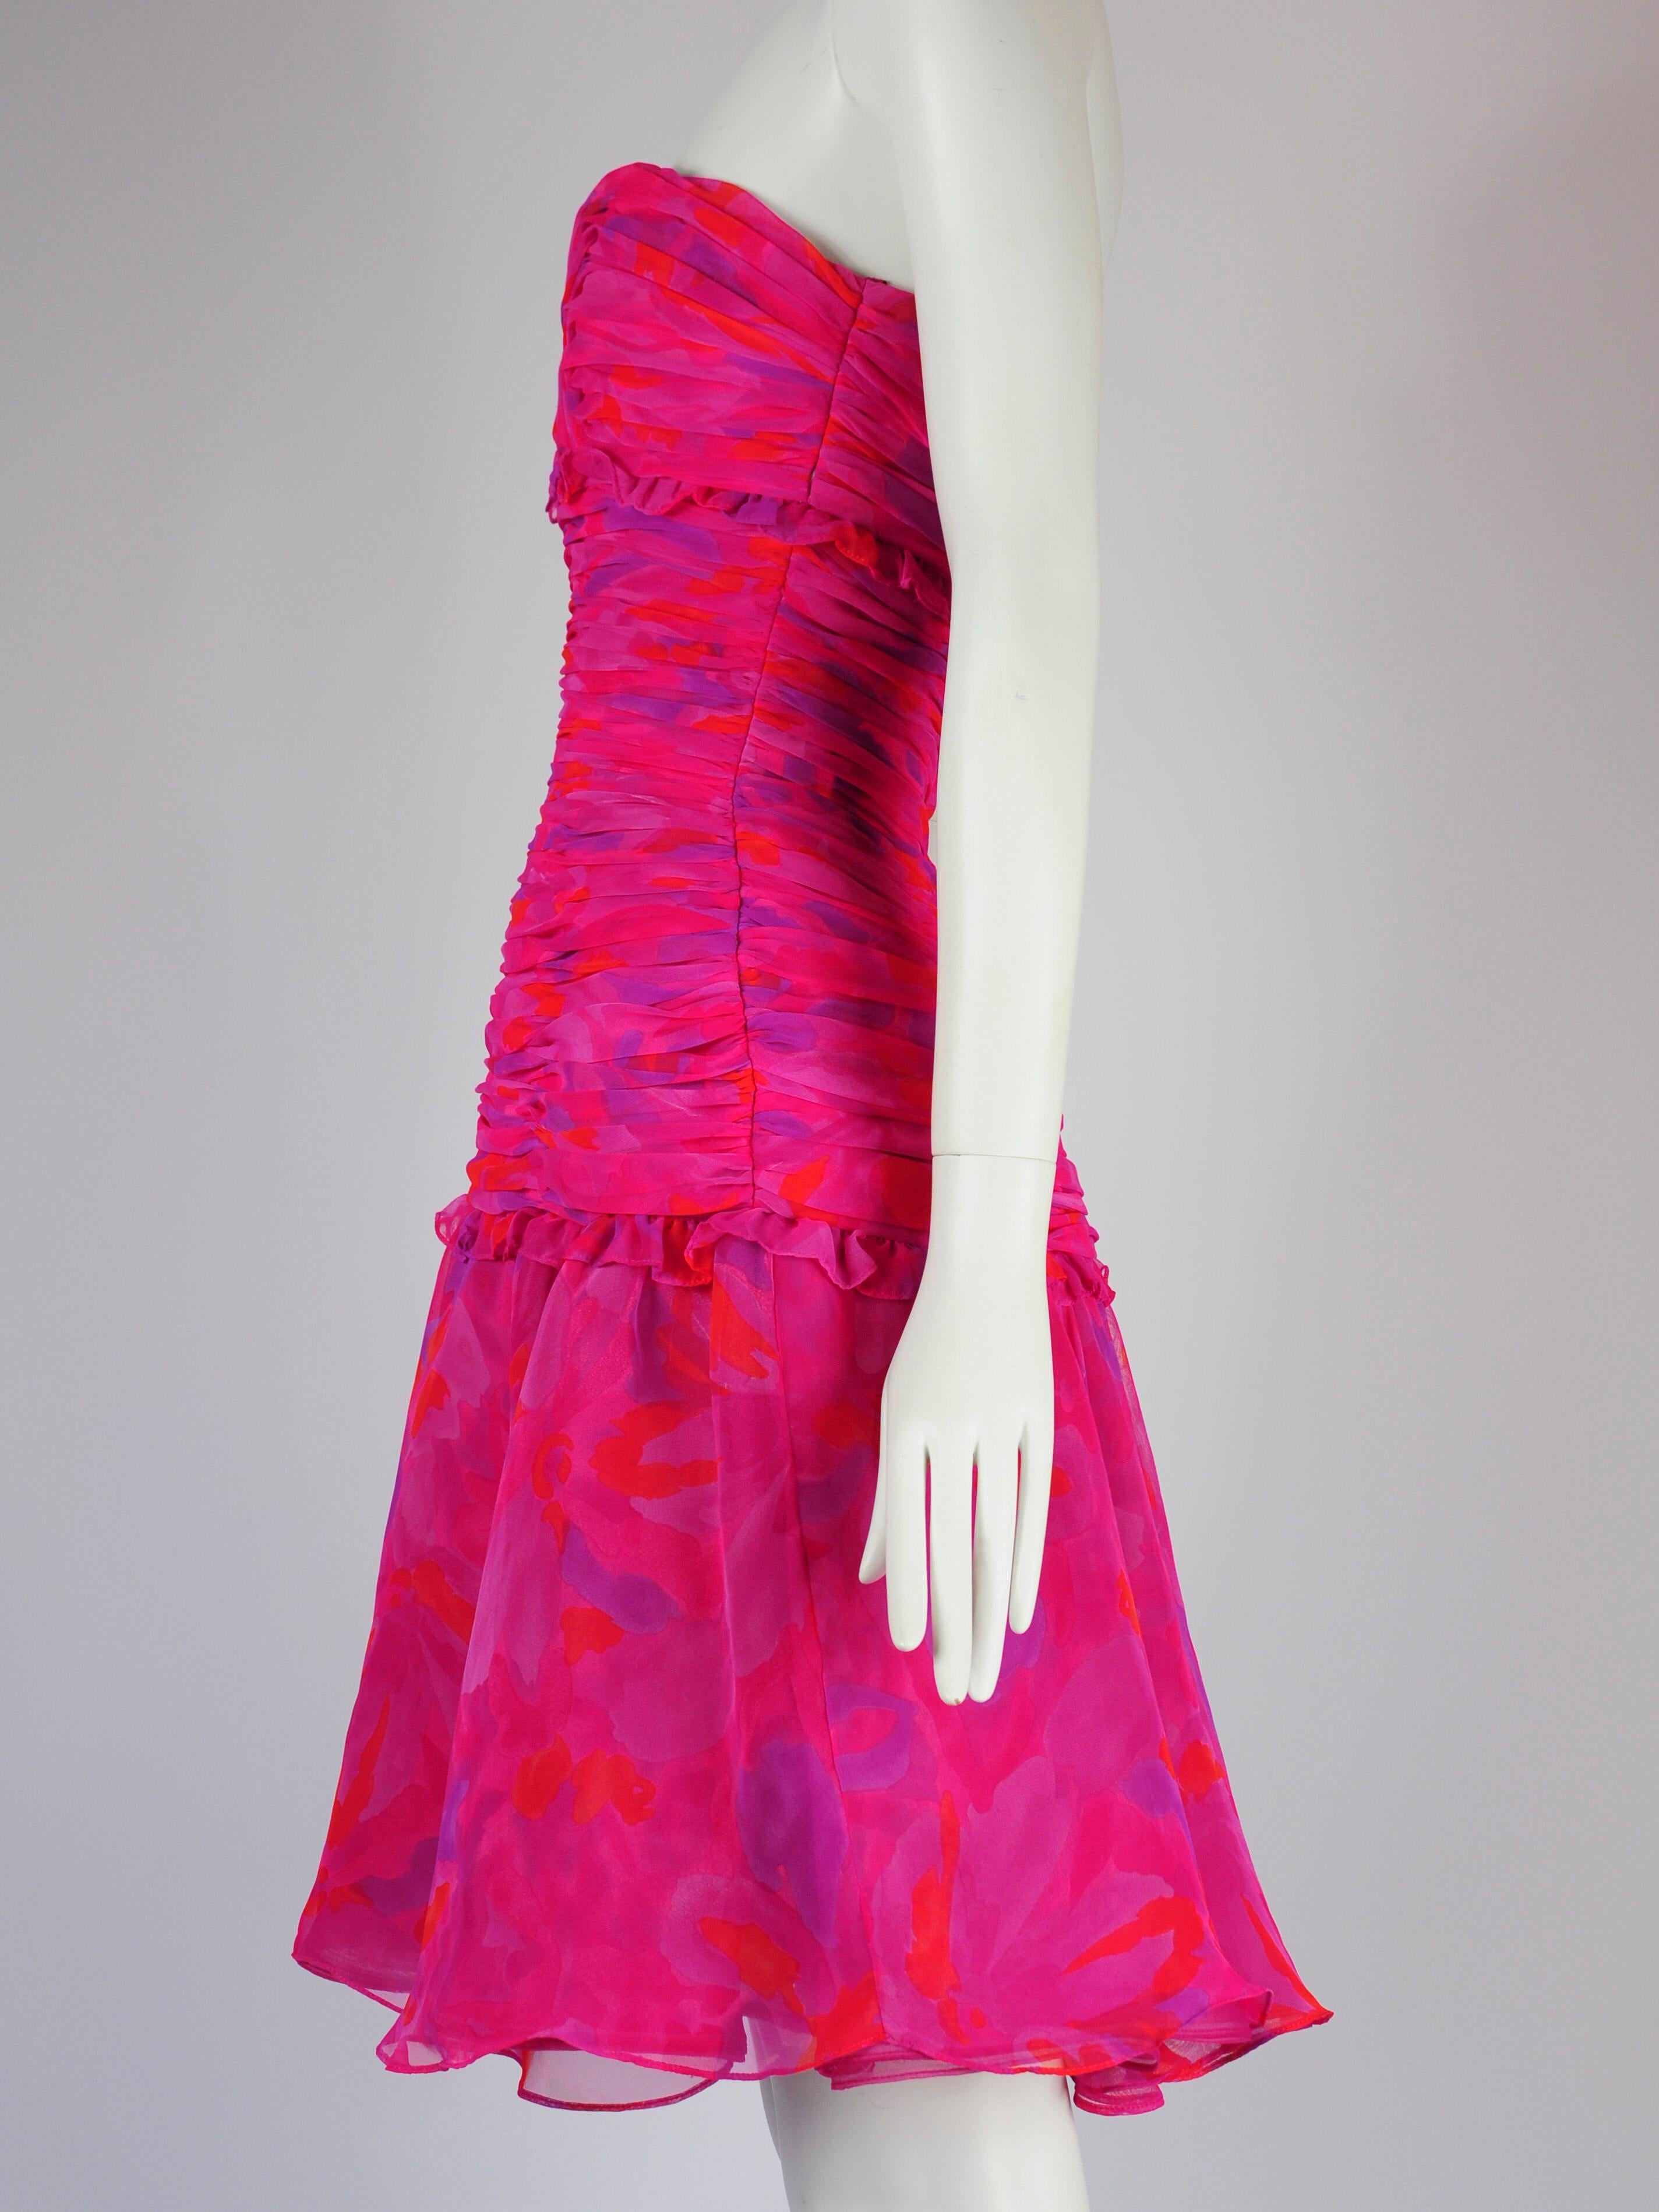 Victor Costa für Saks Fifth Avenue Cocktailkleid in fuchsia-pink mit abstraktem Aquarelldruck. Dieses Kleid von Victor Costa hat ein gerüschtes Mieder, eine überschnittene Taille und einen mehrlagigen Rock. Würde perfekt als Hochzeitskleid für Gäste